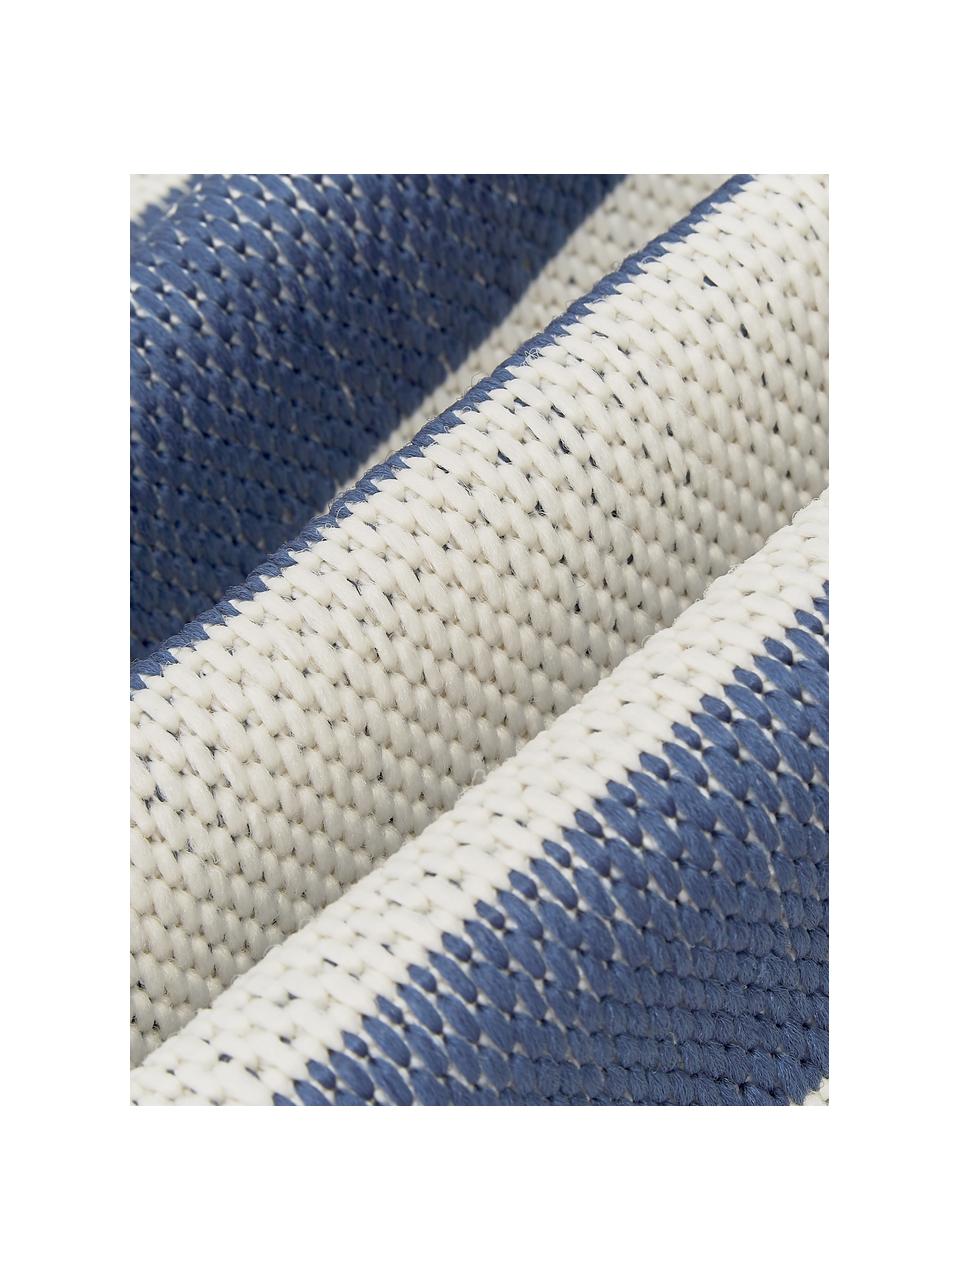 Tappeto da interno-esterno a righe color blu/bianco crema Axa, 86% polipropilene, 14% poliestere, Bianco crema, blu, Larg. 200 x Lung. 290 cm  (taglia L)